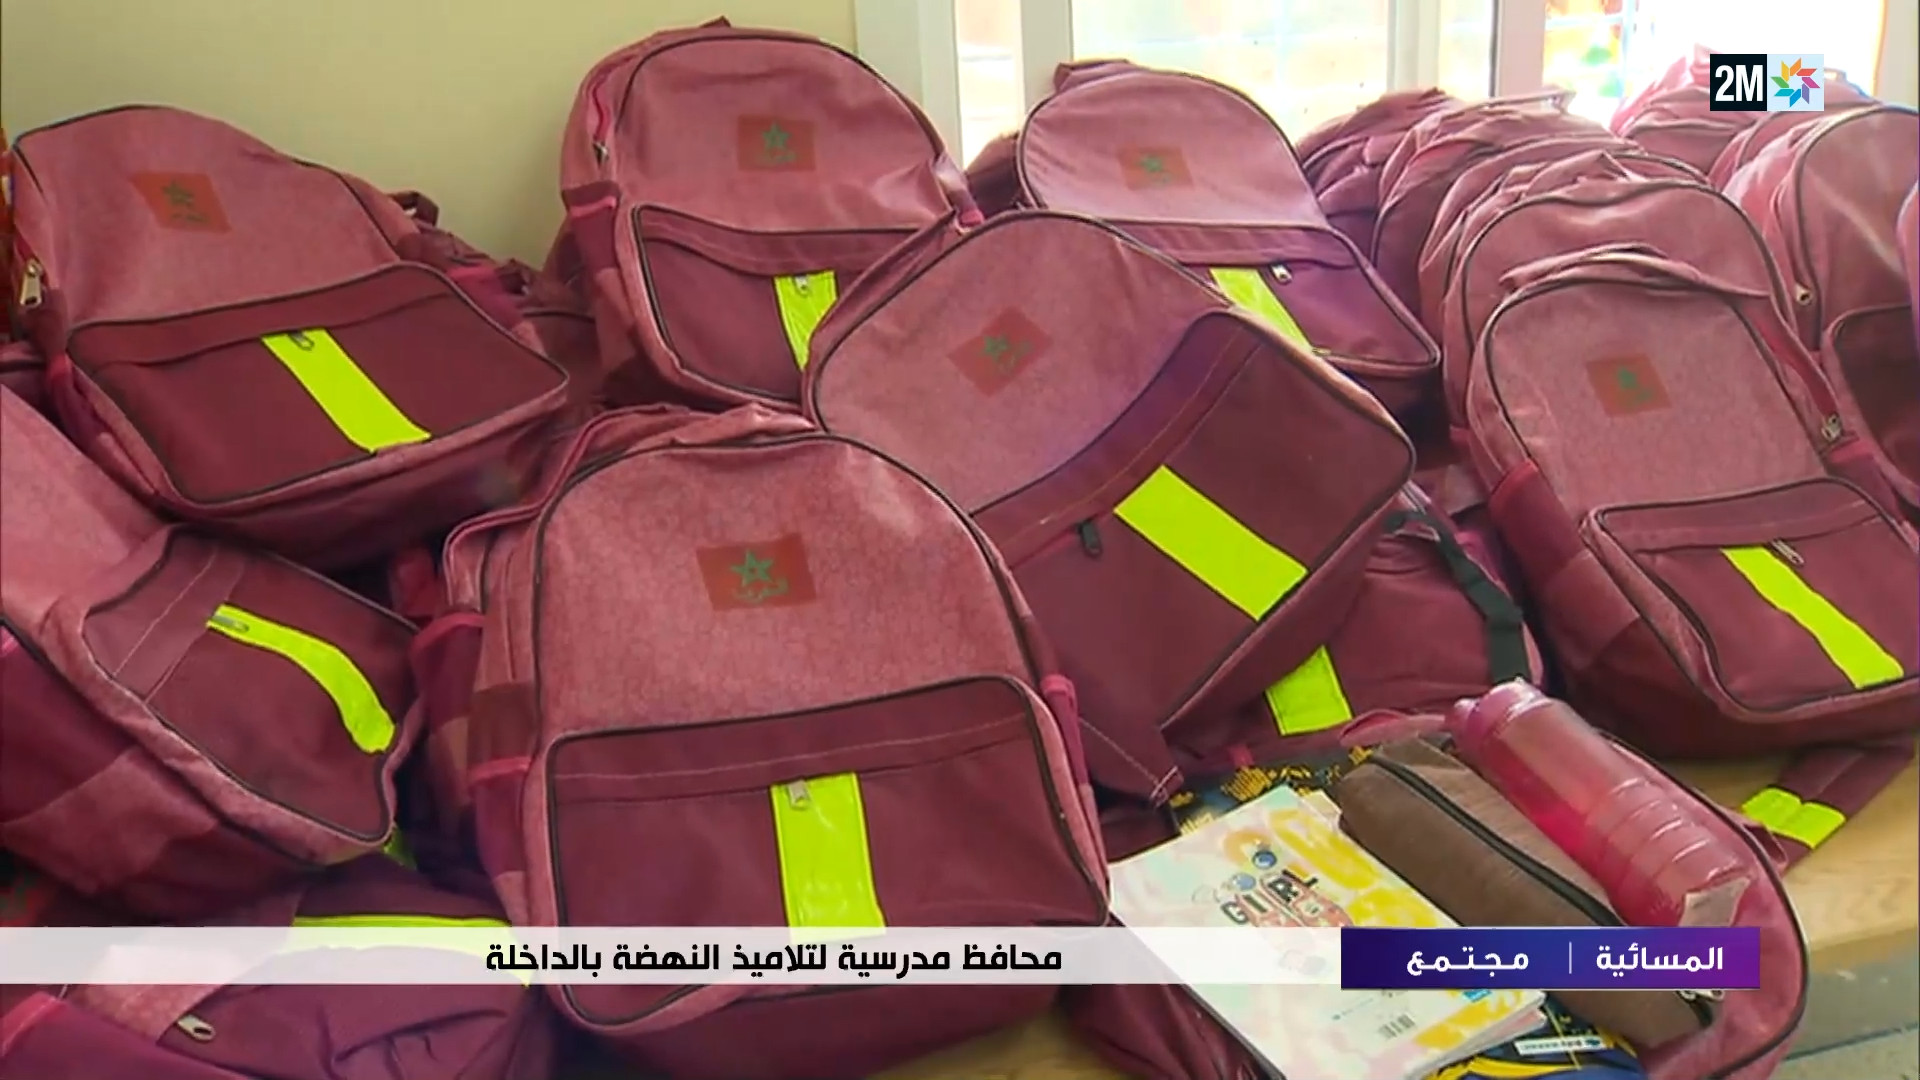 فيديو: توزيع حقائب مدرسية لفائدة تلاميذ مدرسة النهضة الابتدائية بالداخلة